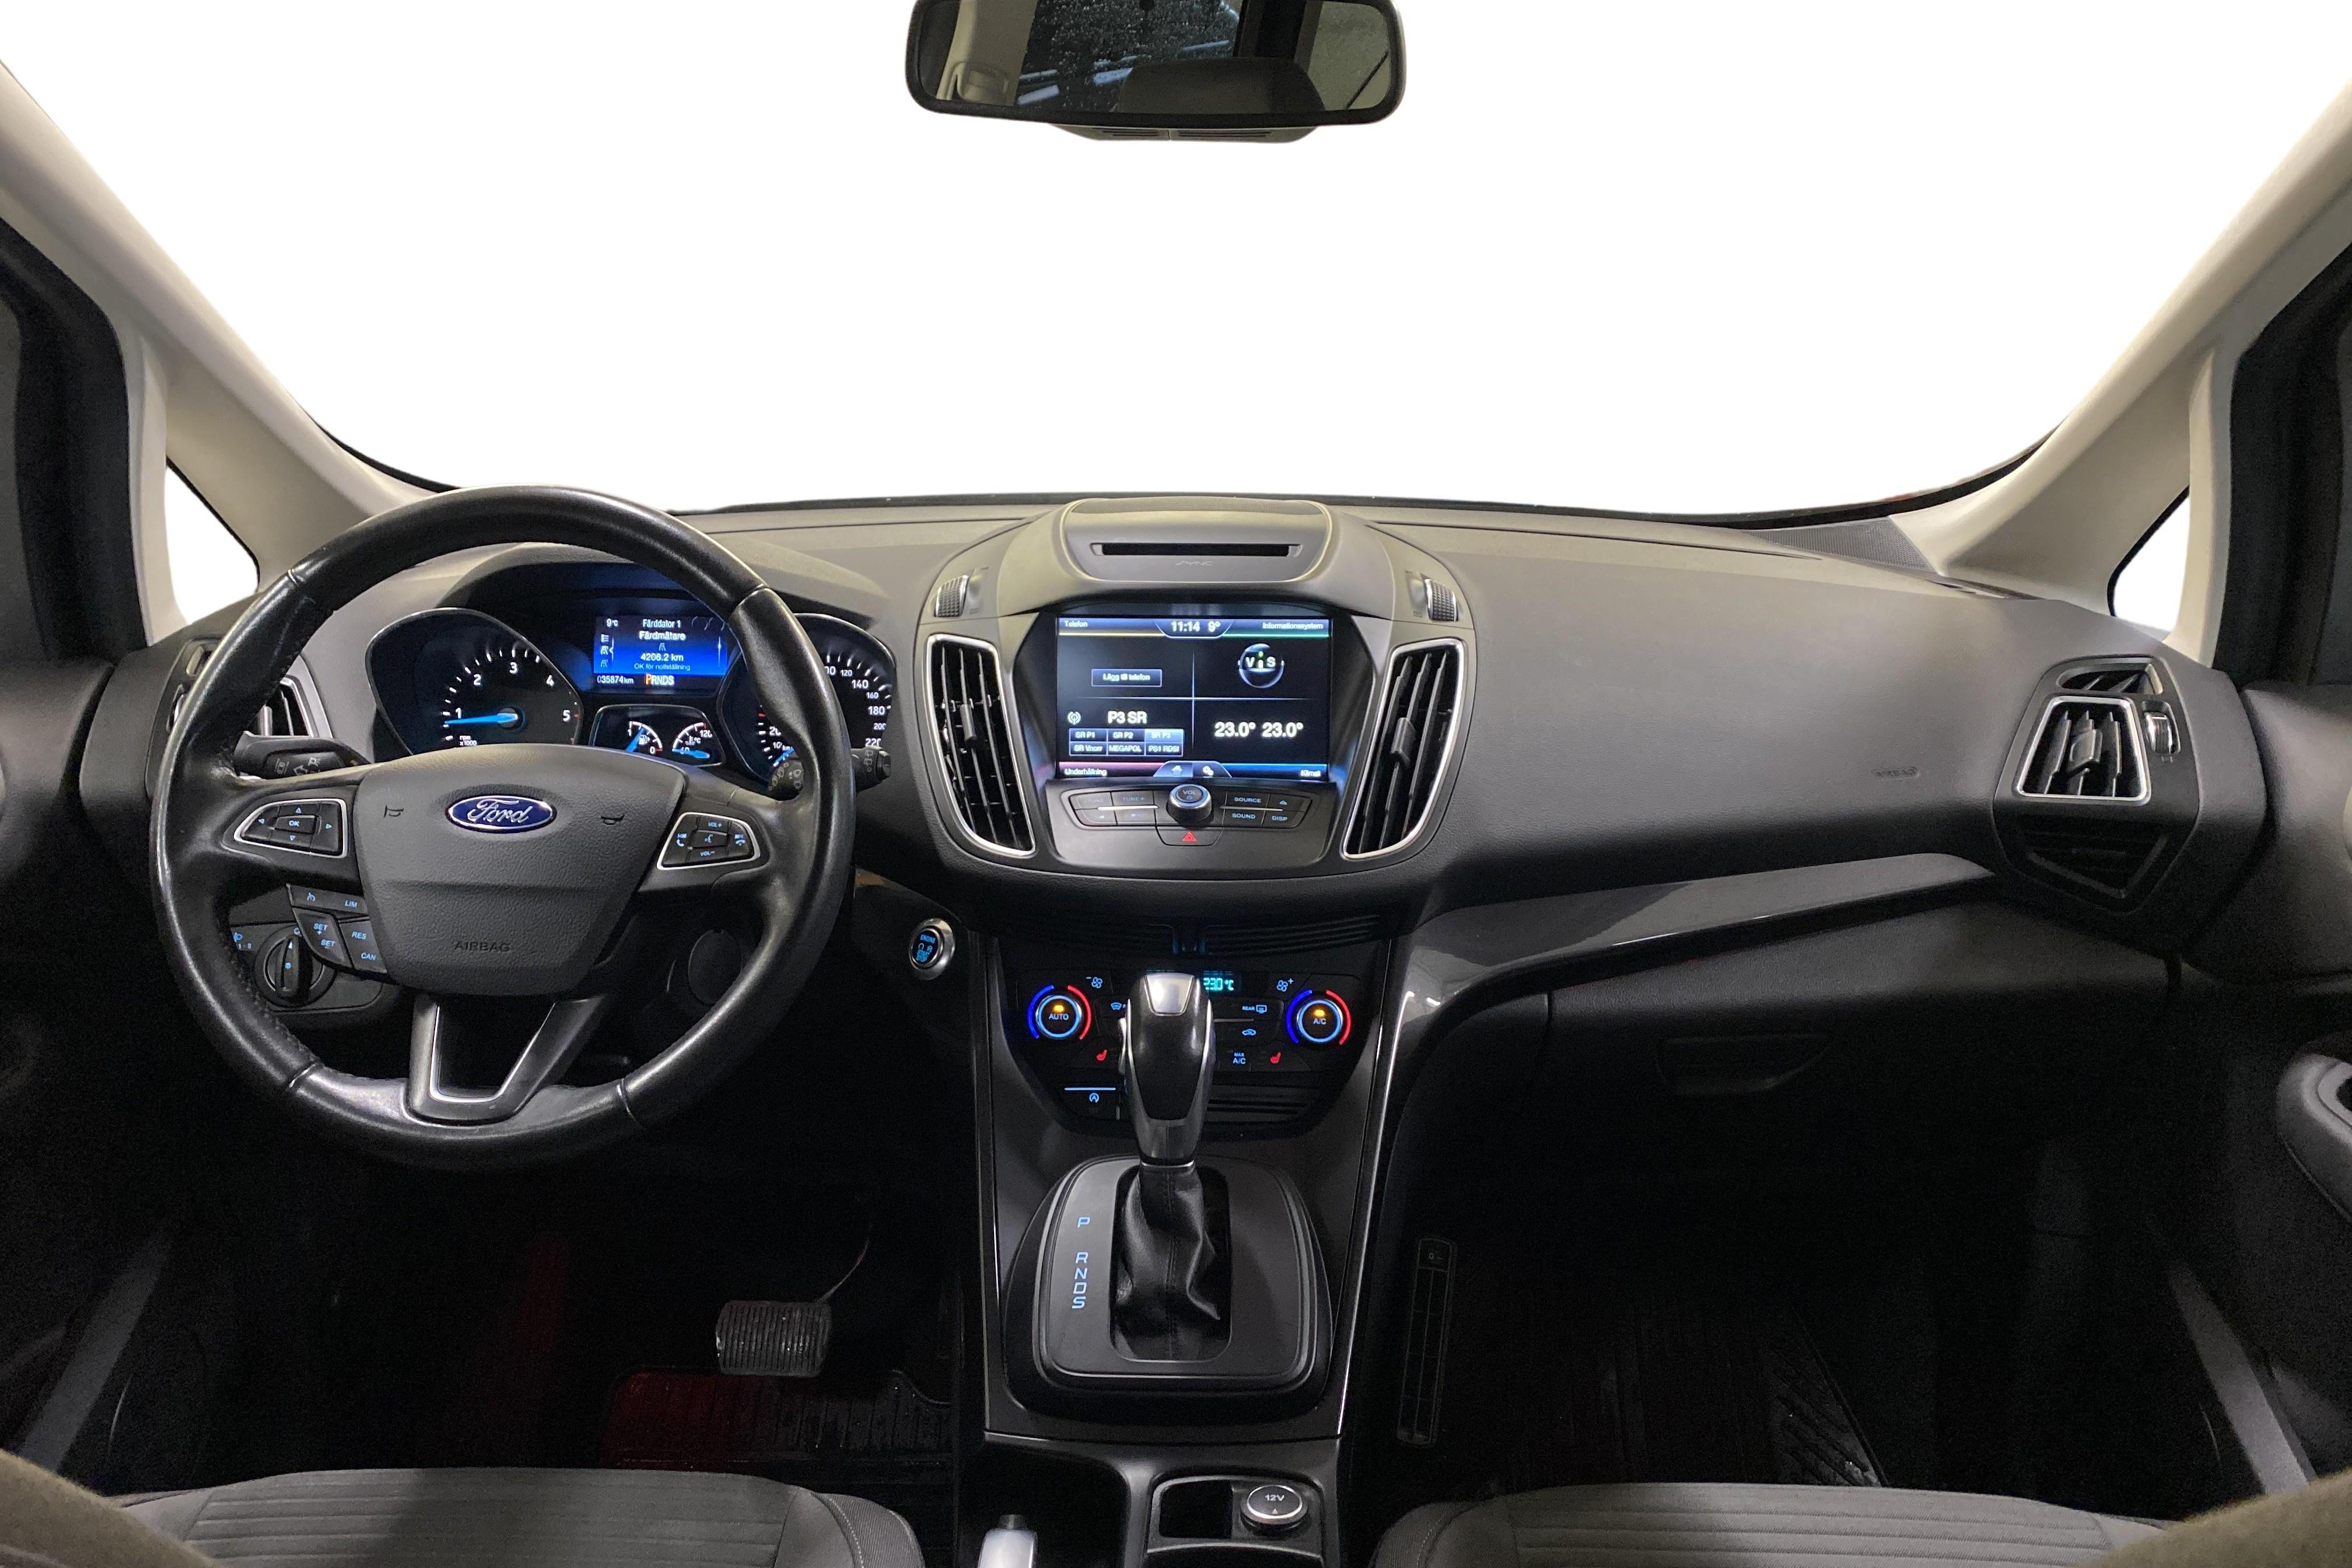 Ford C-MAX 2.0 TDCi (150hk) - 3 588 mil - Automat - grå - 2016